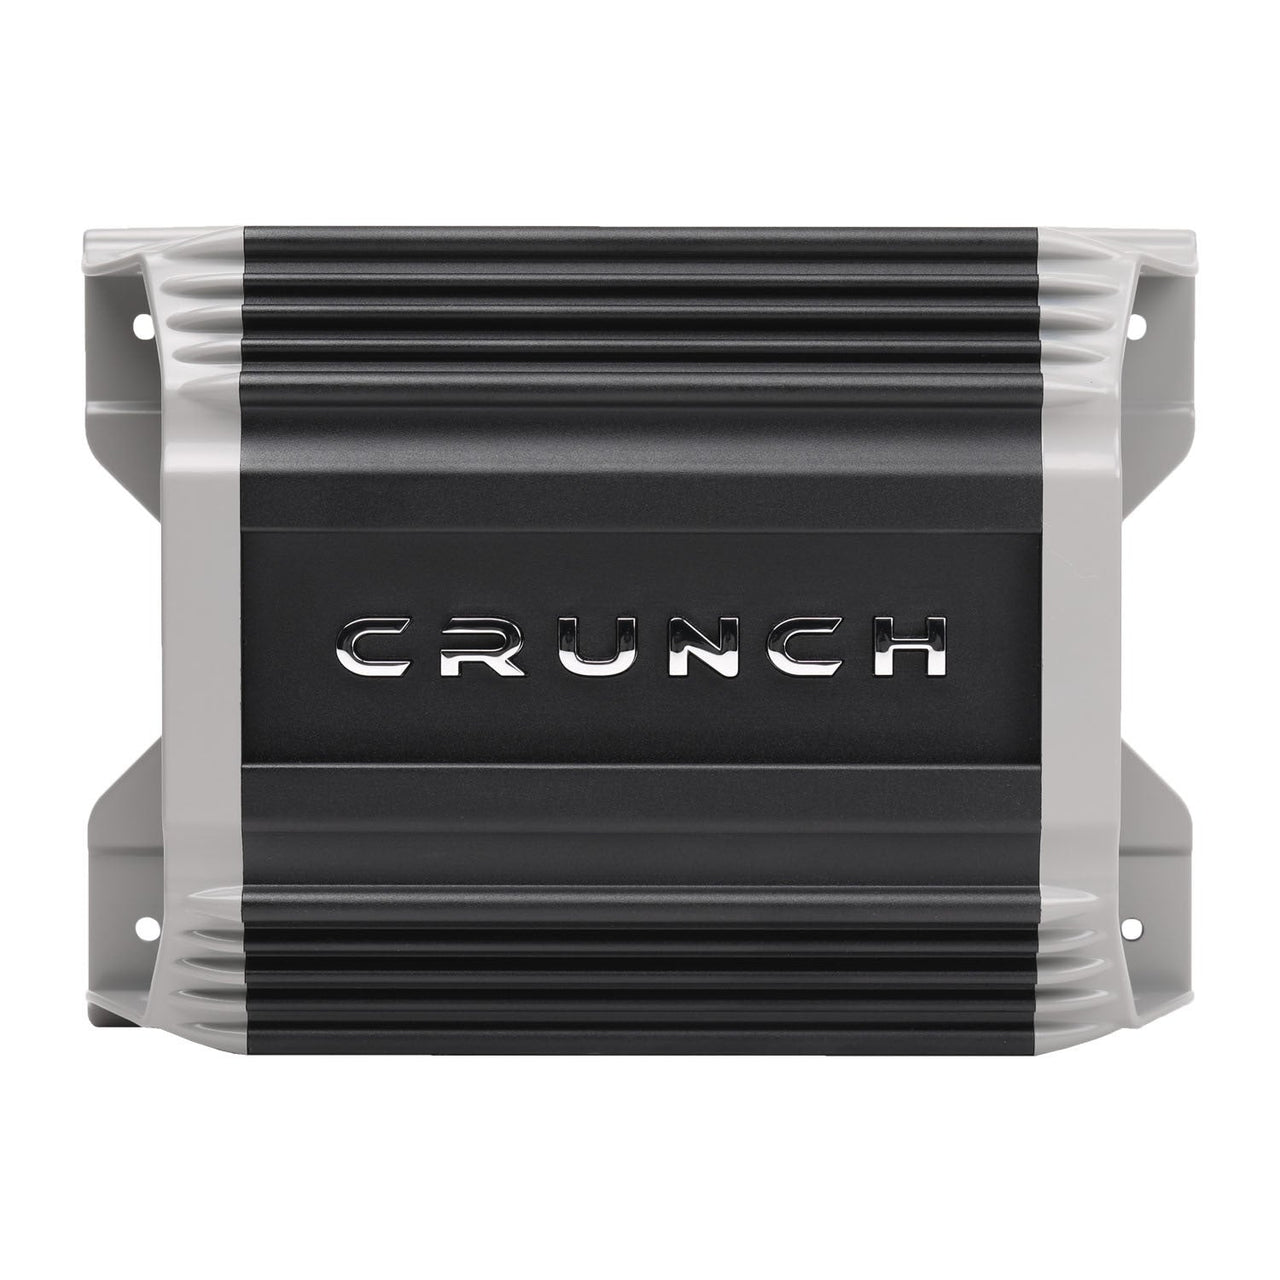 Crunch PZ2-2030.5D 2000 Watt Amplifier 5-Channel Car Audio Amplifier